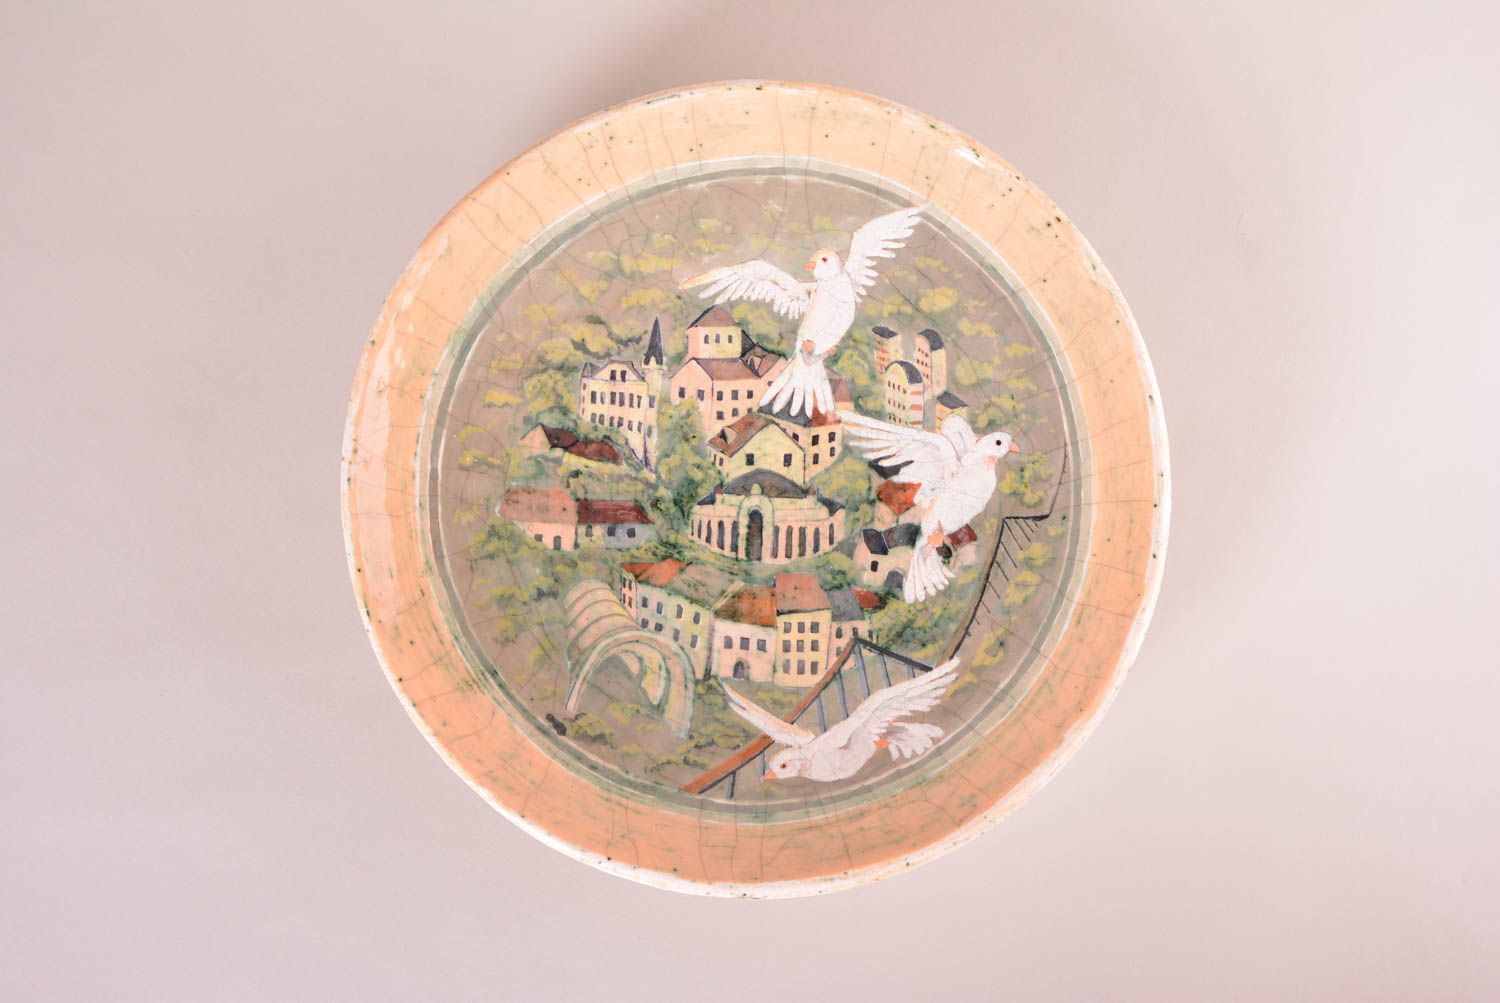 Plato de cerámica hecho a mano pintado vajilla decorativa decoración de hogar foto 1